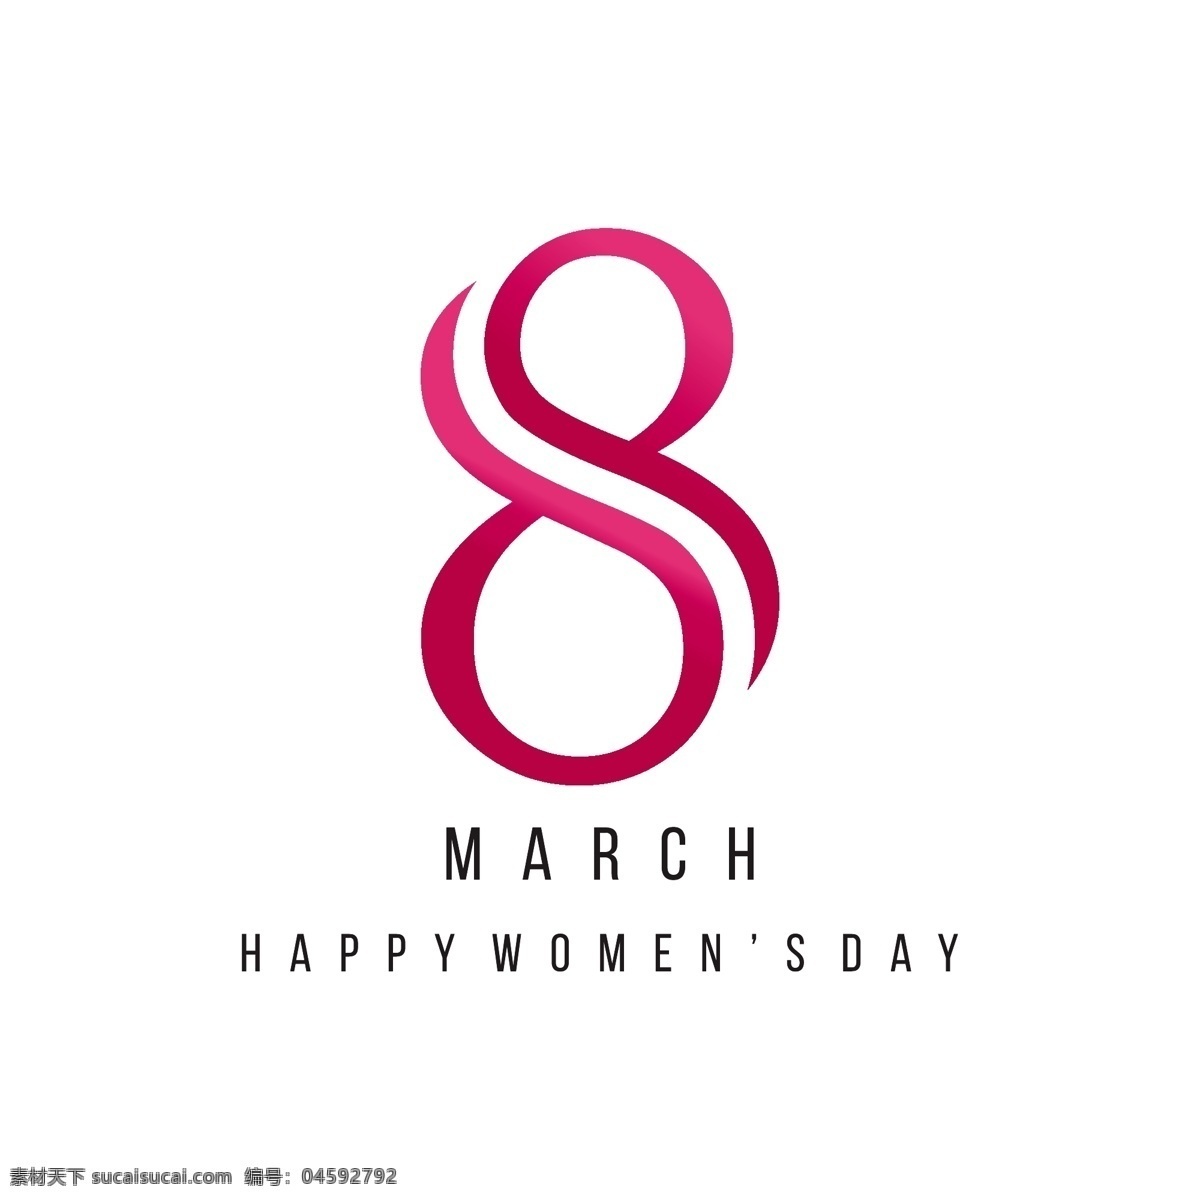 国际妇女节 背景摘要8 背景 庆祝 假日 女士 女性 自由 国际 游行 妇女 平等